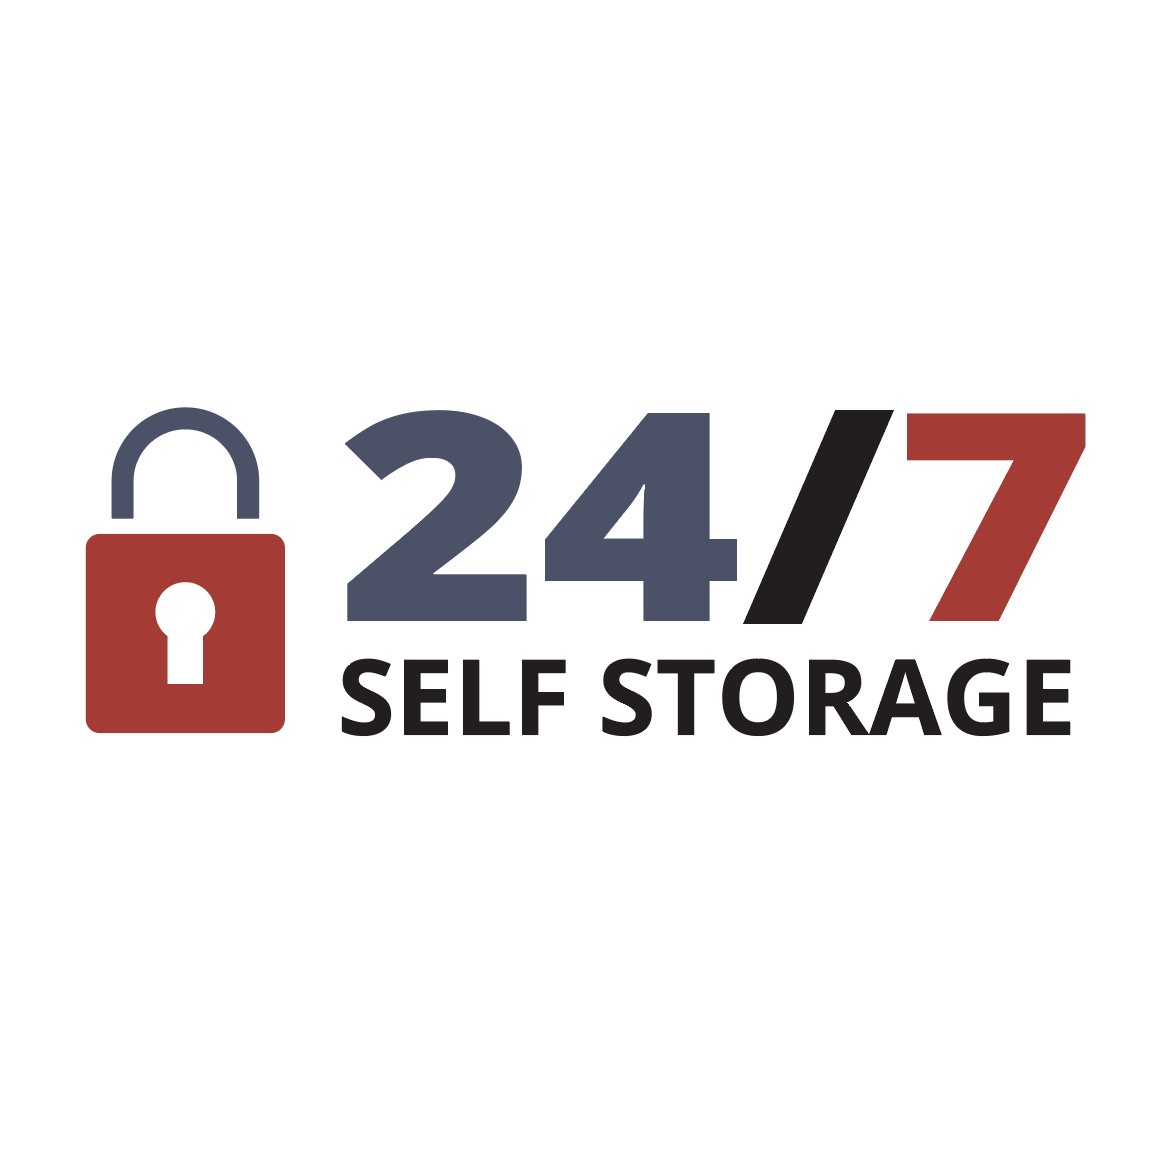 24/7 Self Storage - Self-Storage